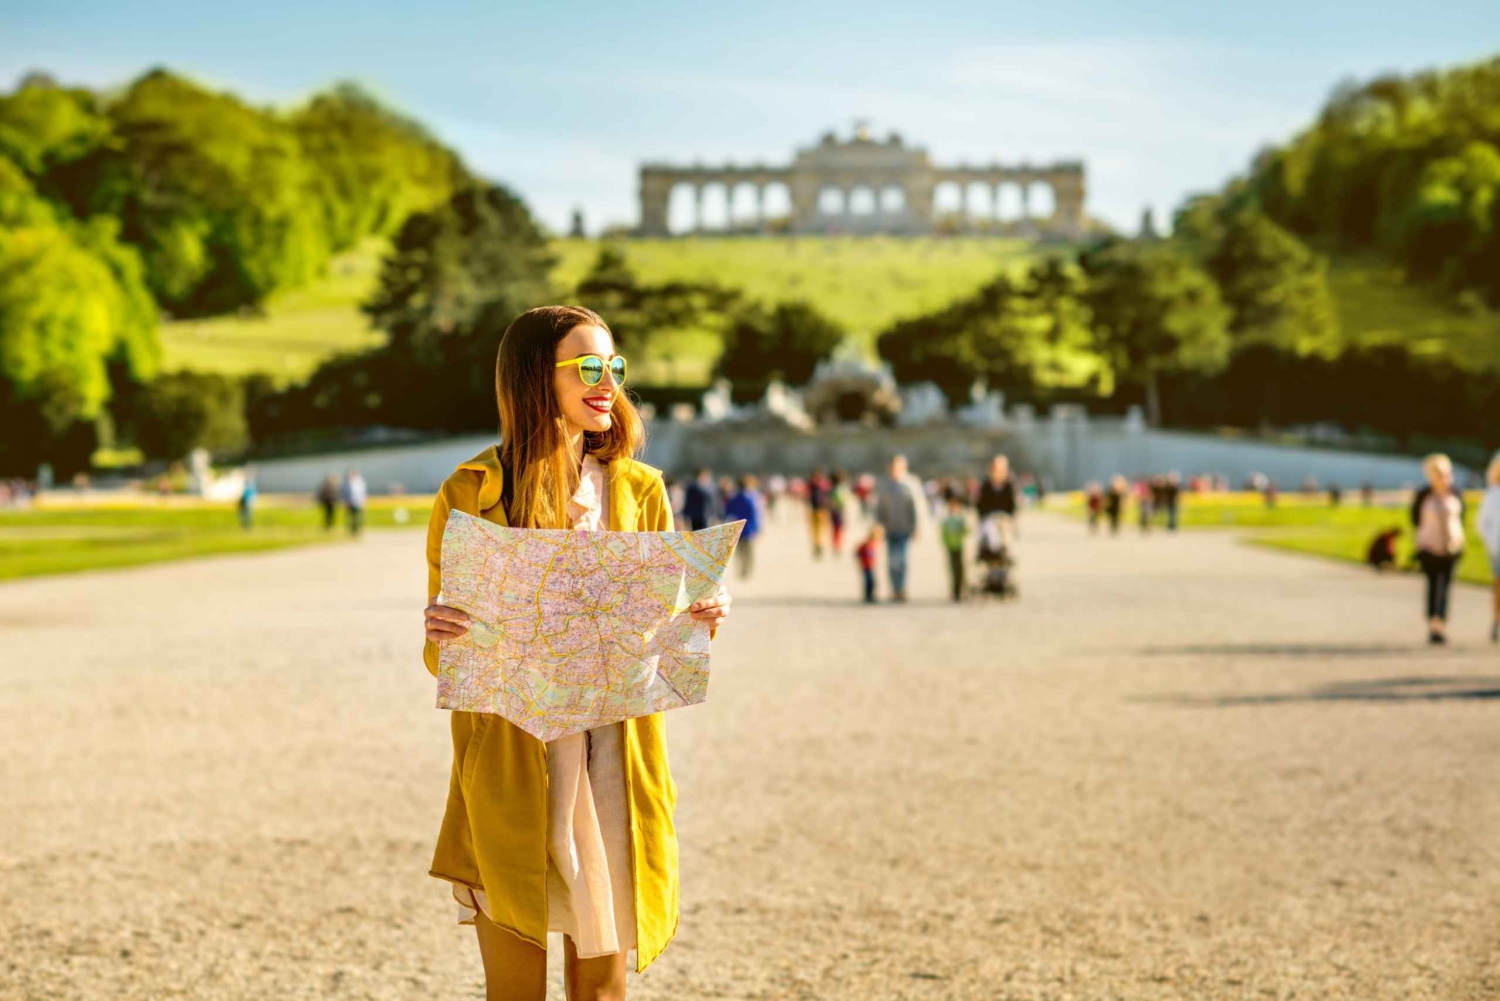 Viena: excursão privada sem fila ao Palácio de Schonbrunn